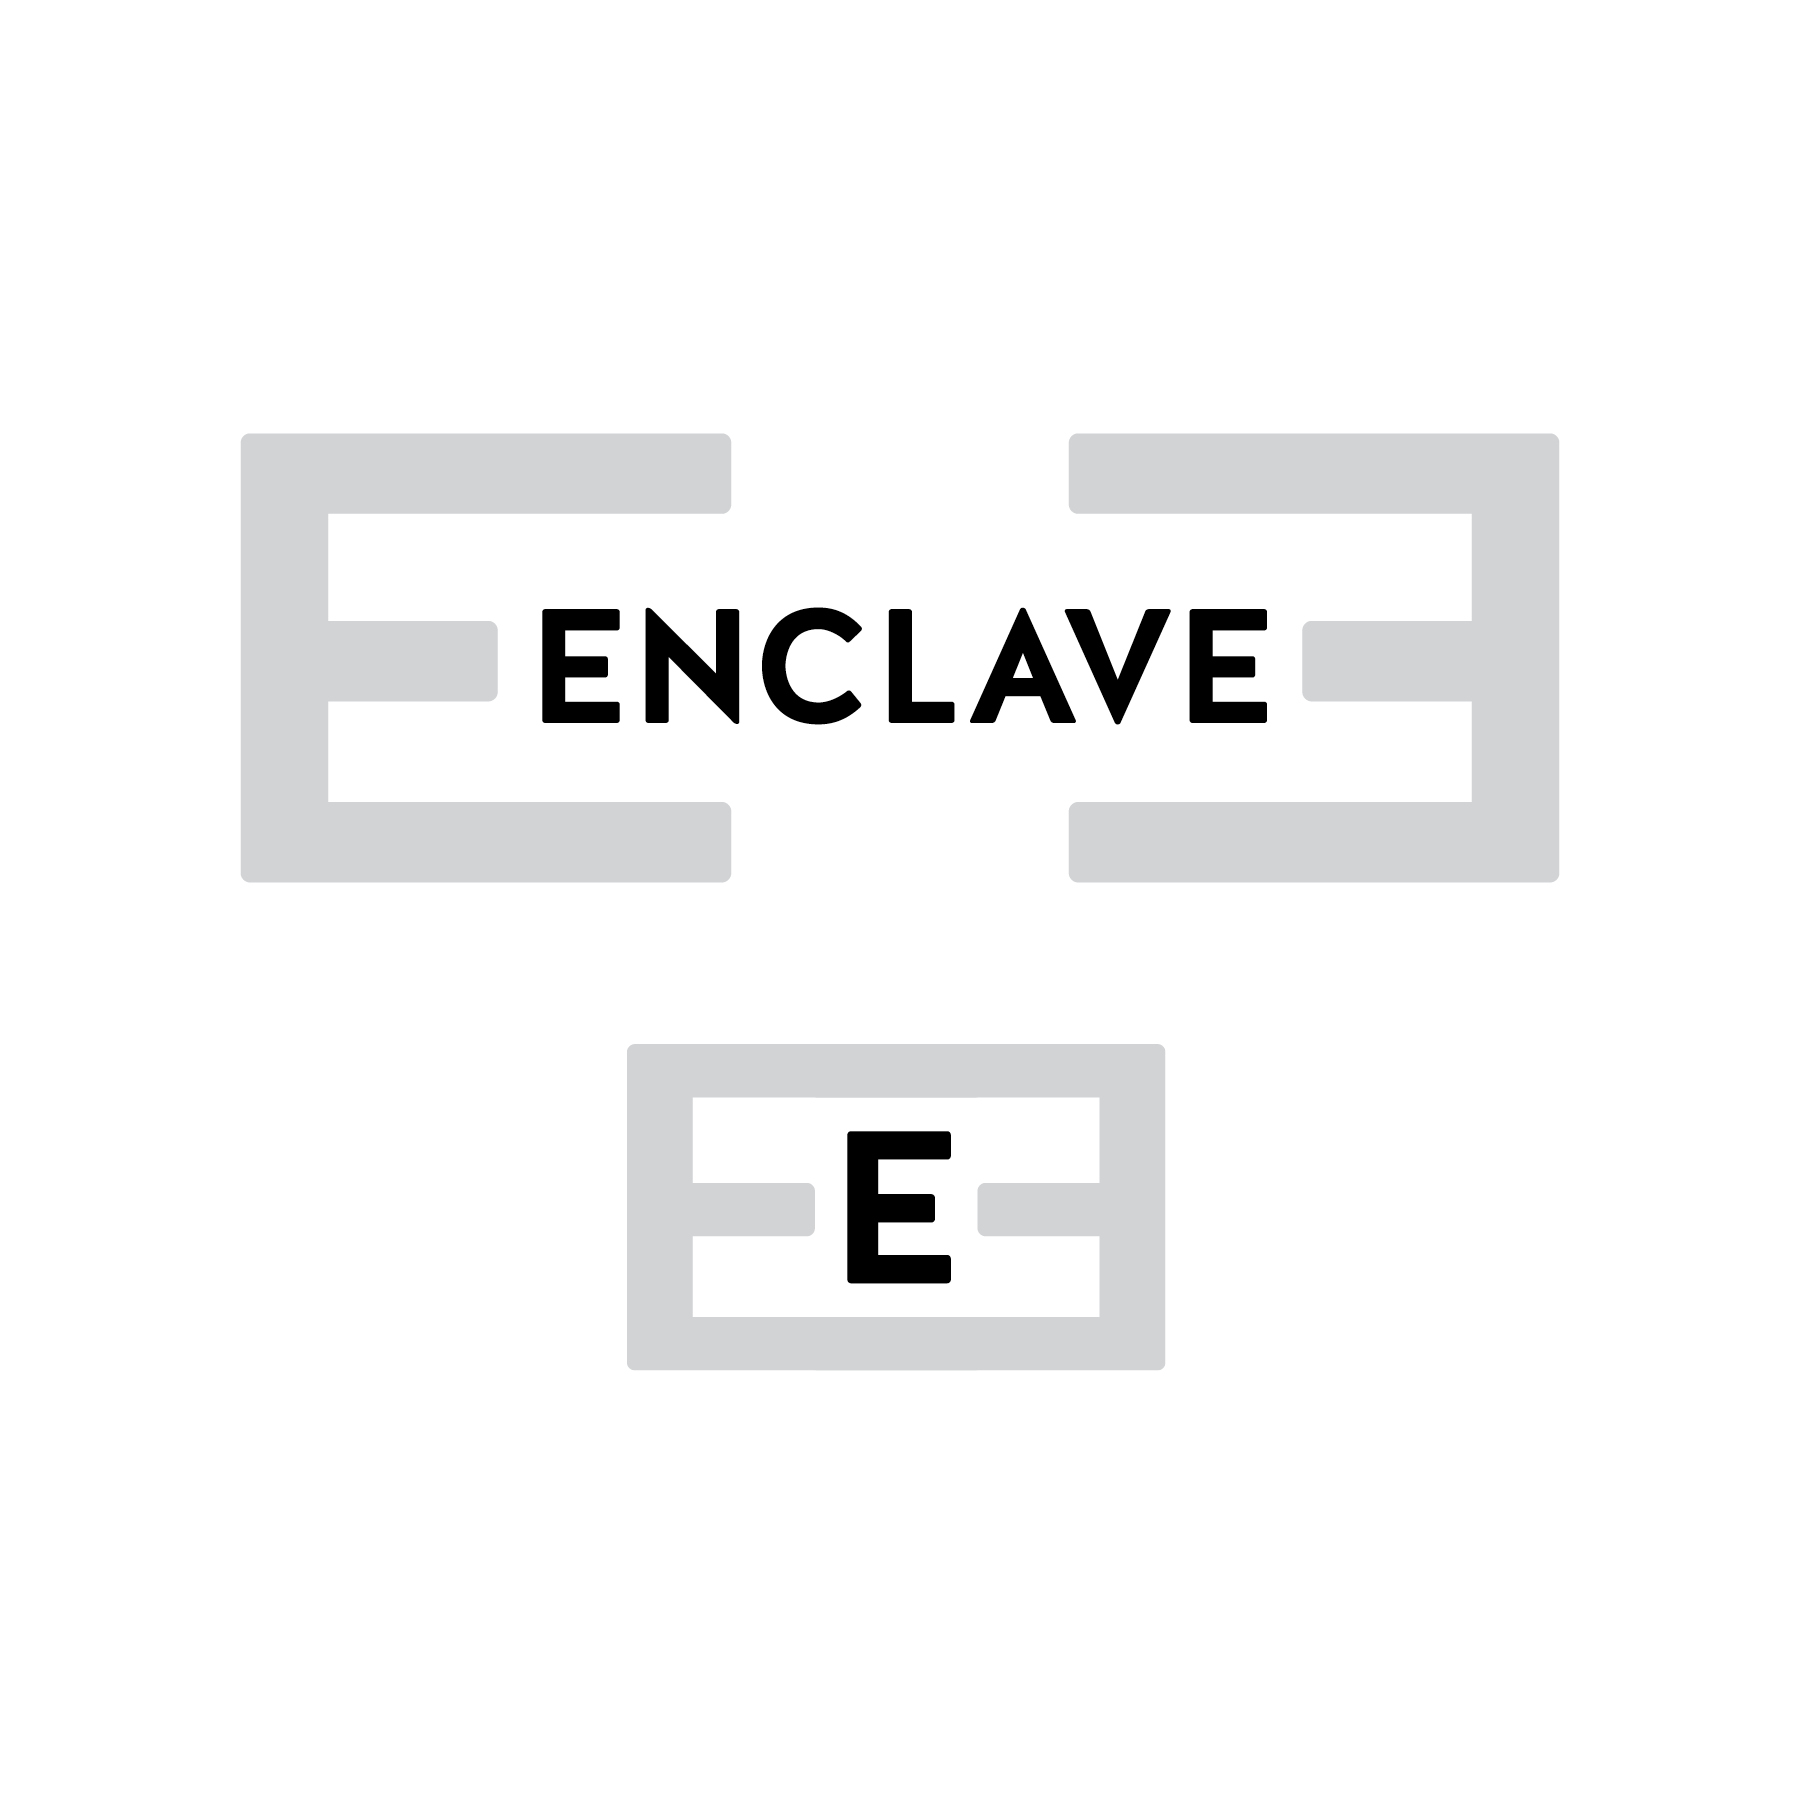 Enclave1-2.jpg